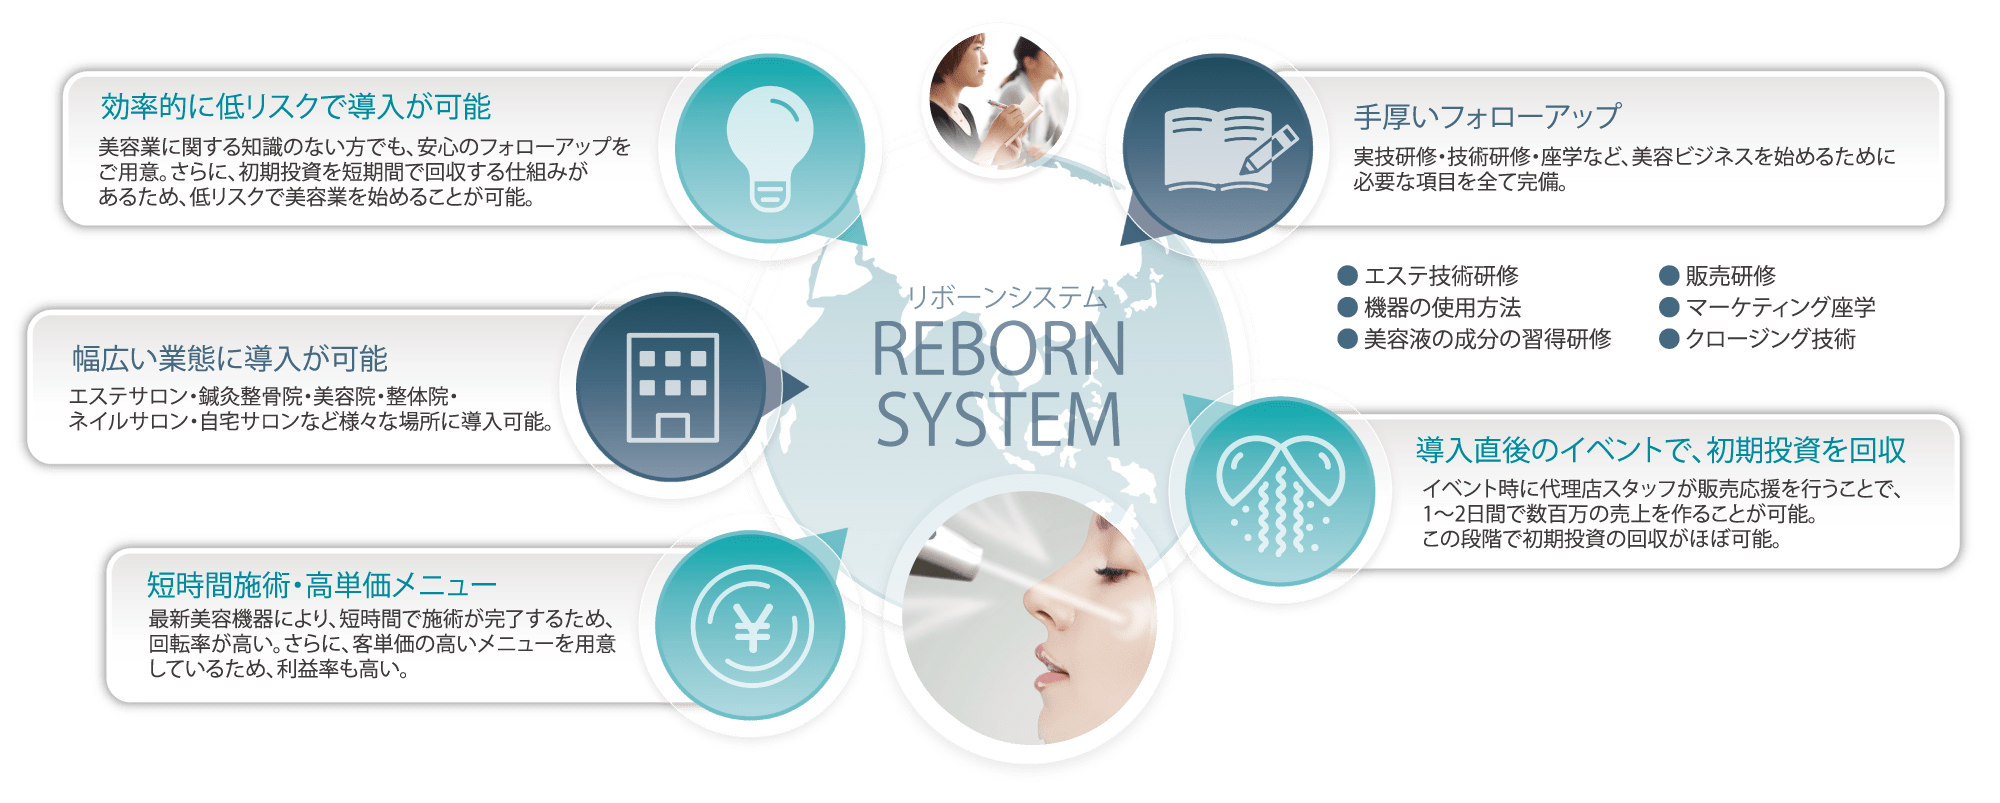 REBORN SYSTEM 5つのポイント